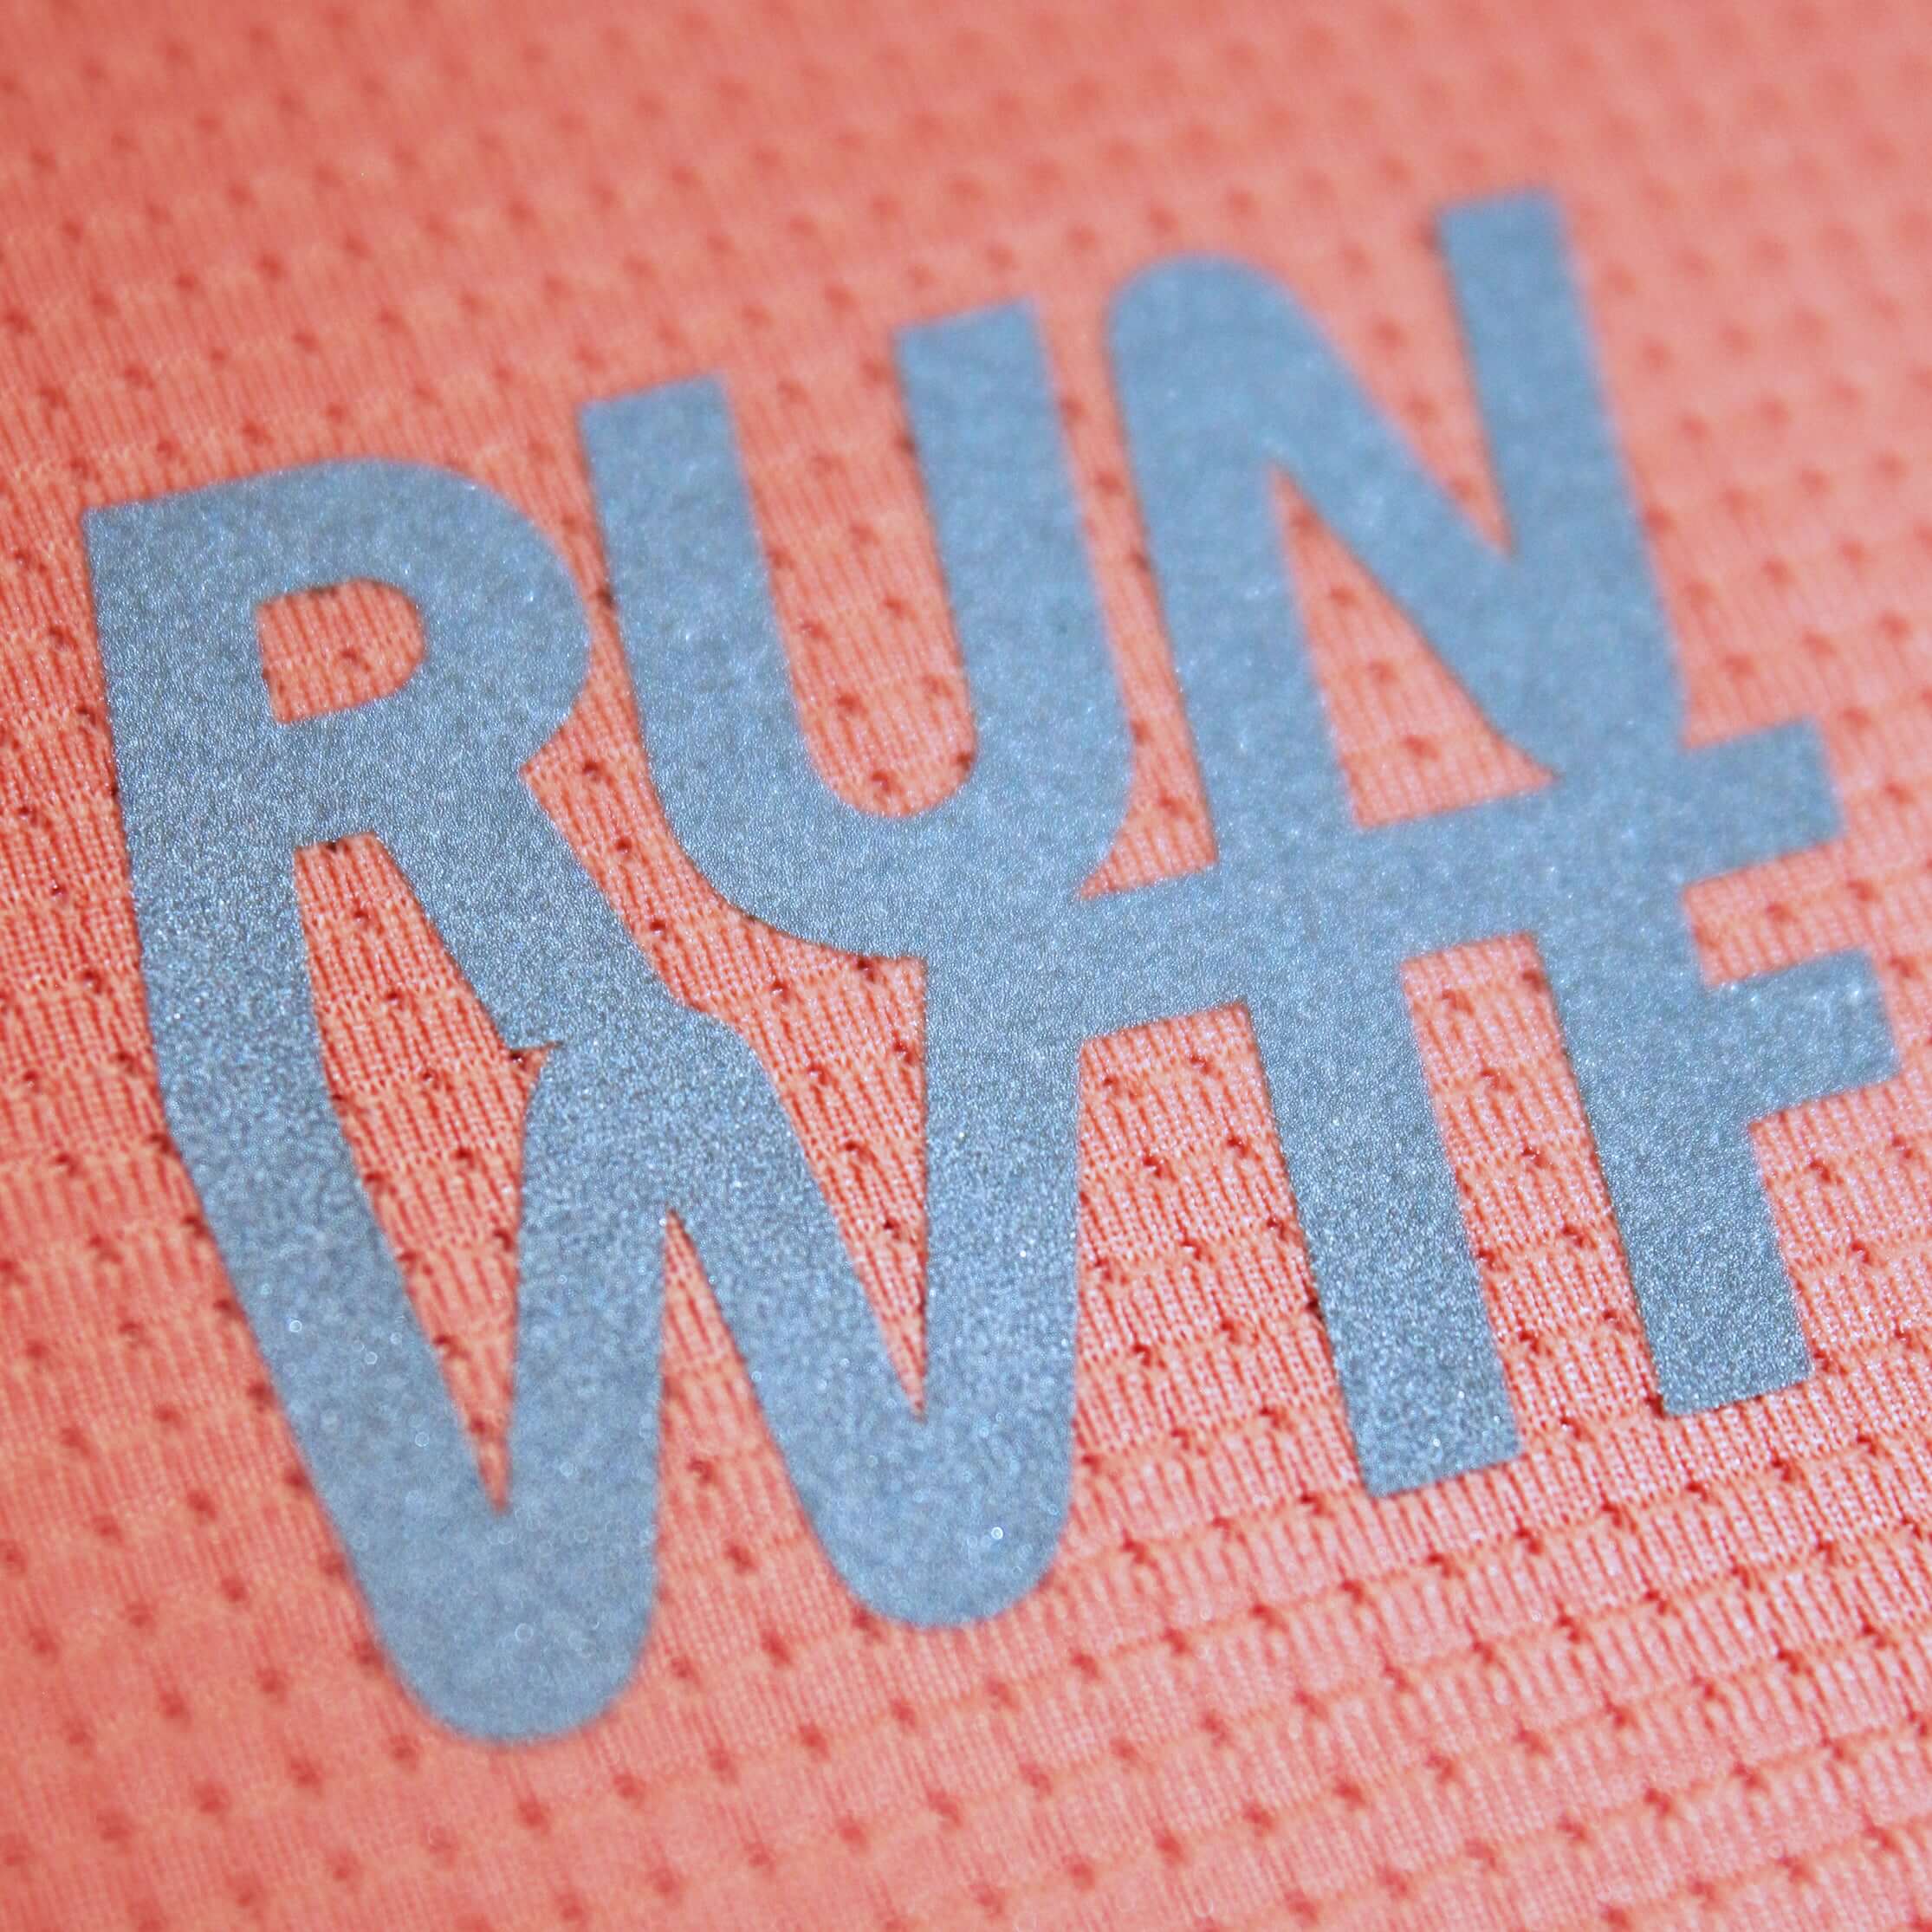 RUN WTF Running Apparel steht für hochwertig verarbeitete Laufbekleidung. Entwickelt für passionierte LäuferInnen, die alles geben.